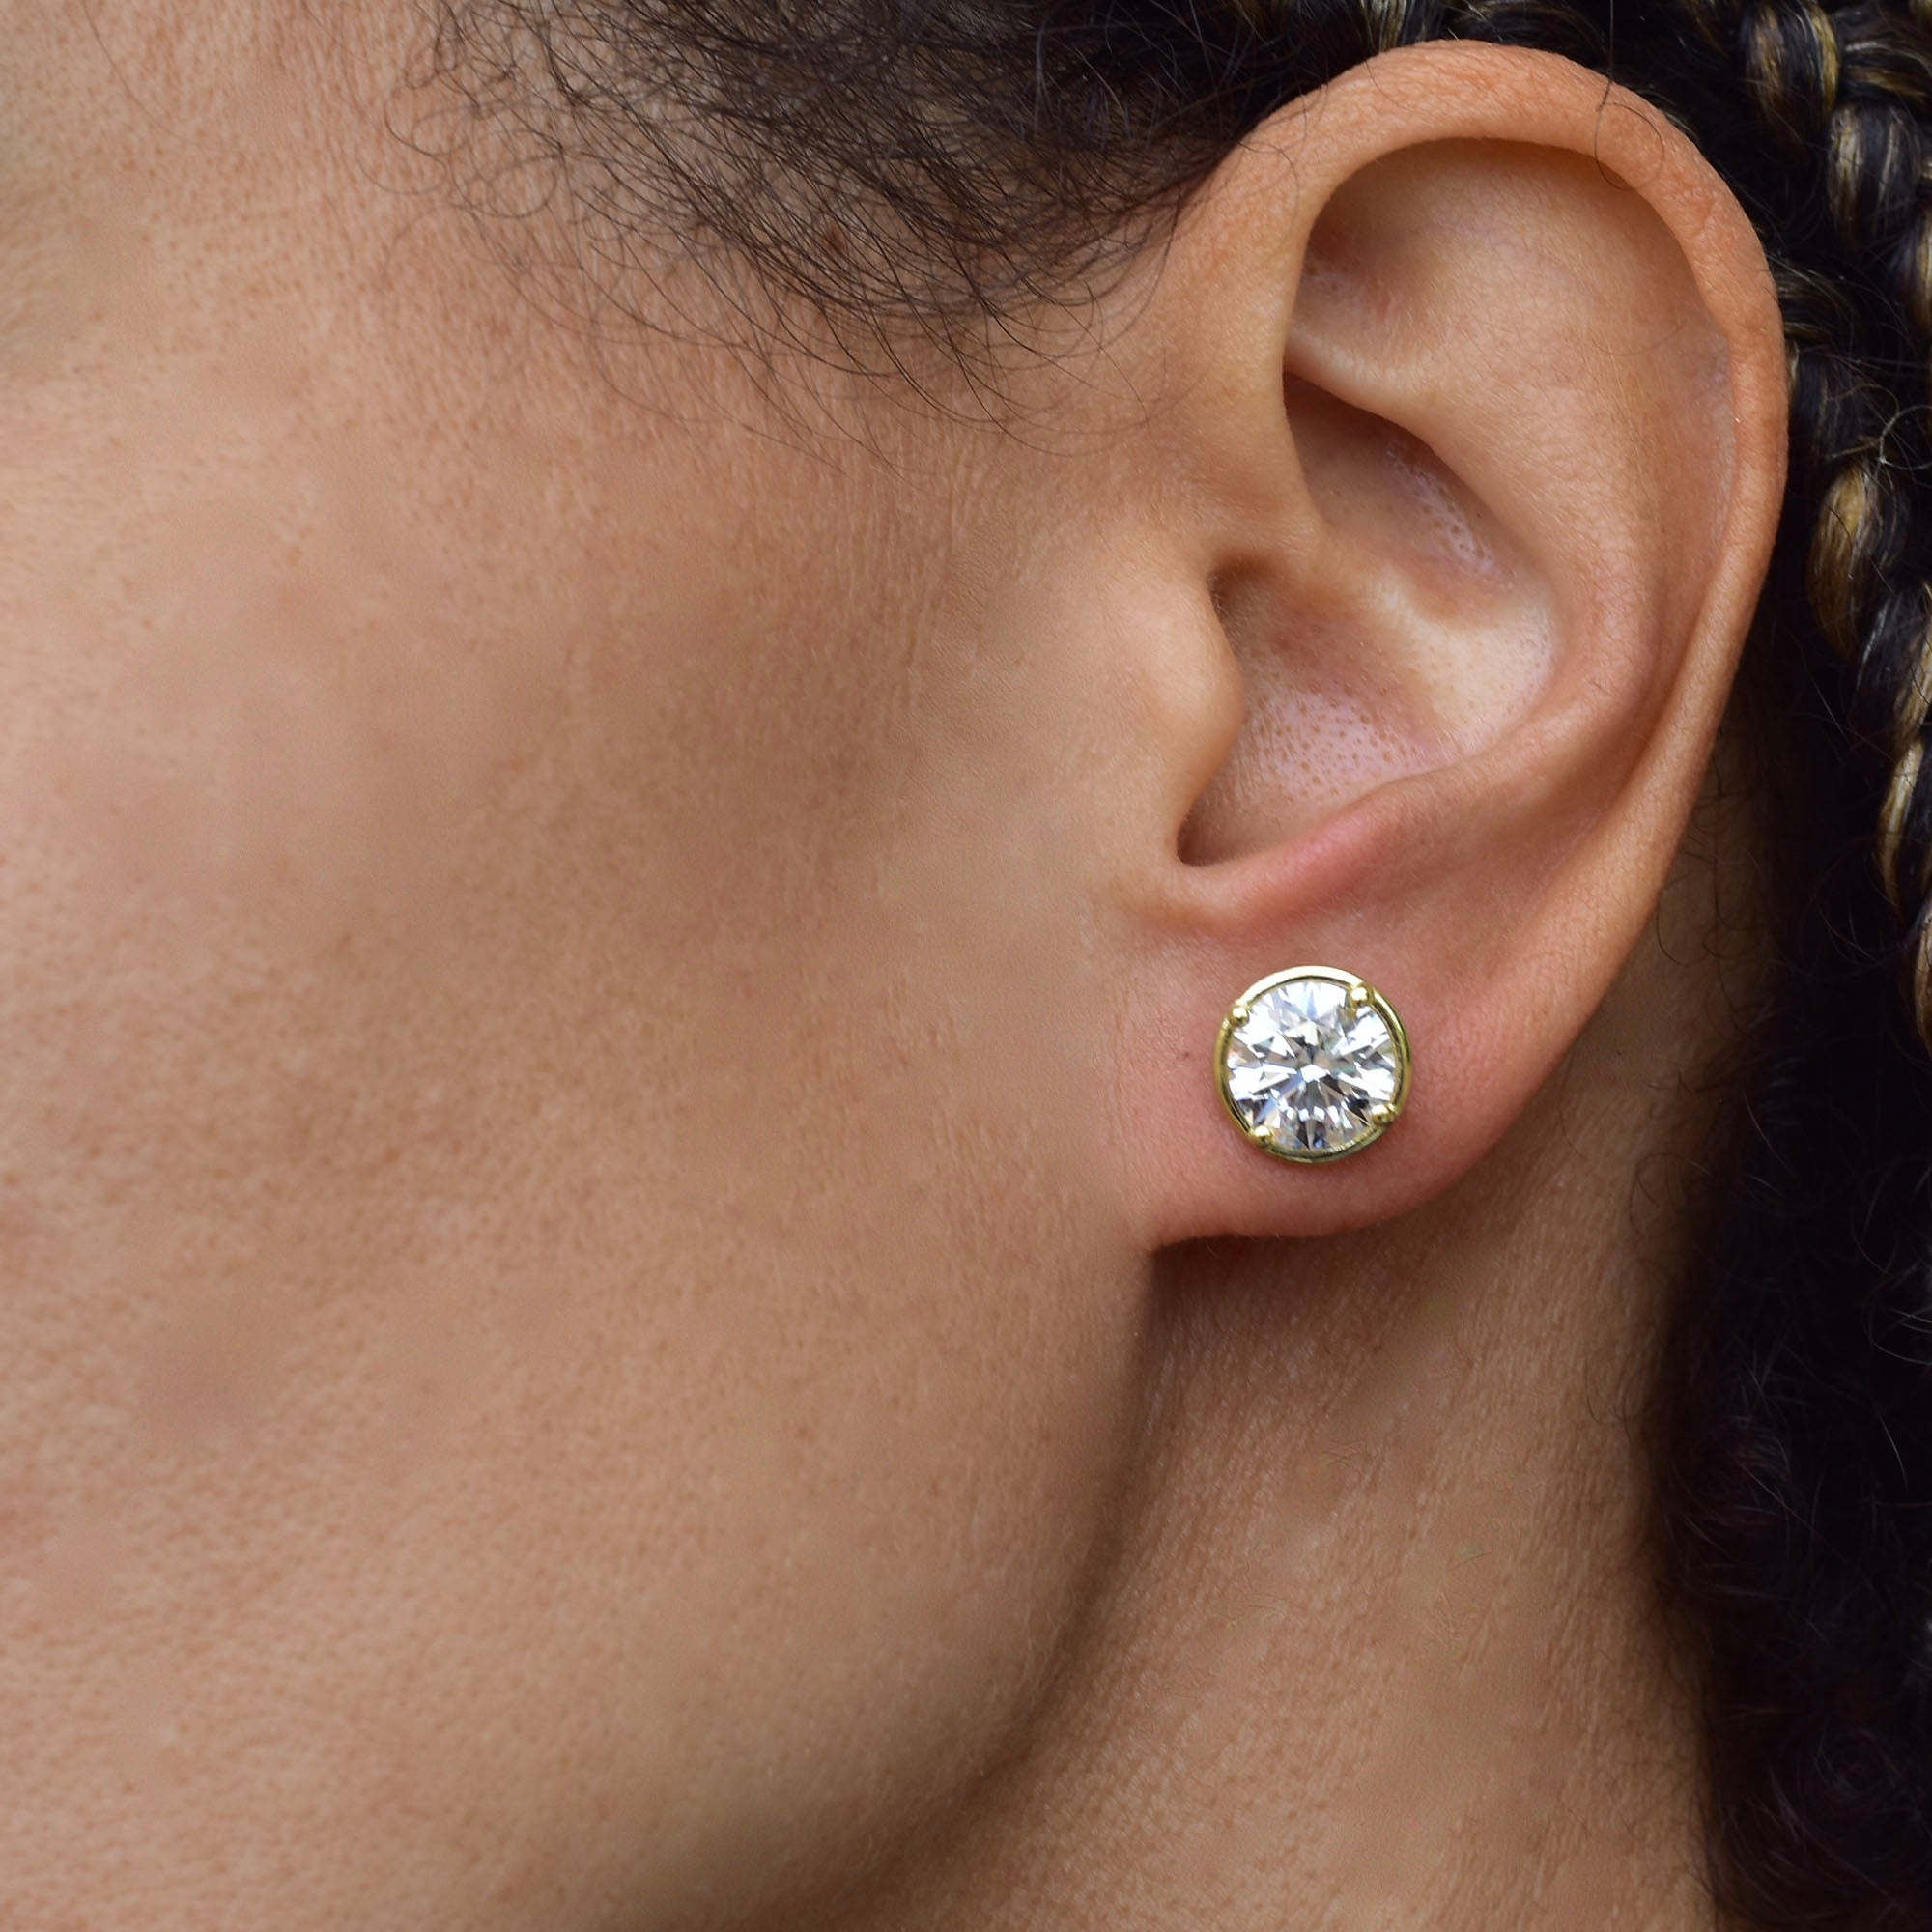 Diamond Stud Earring - Two Carats Each Ear